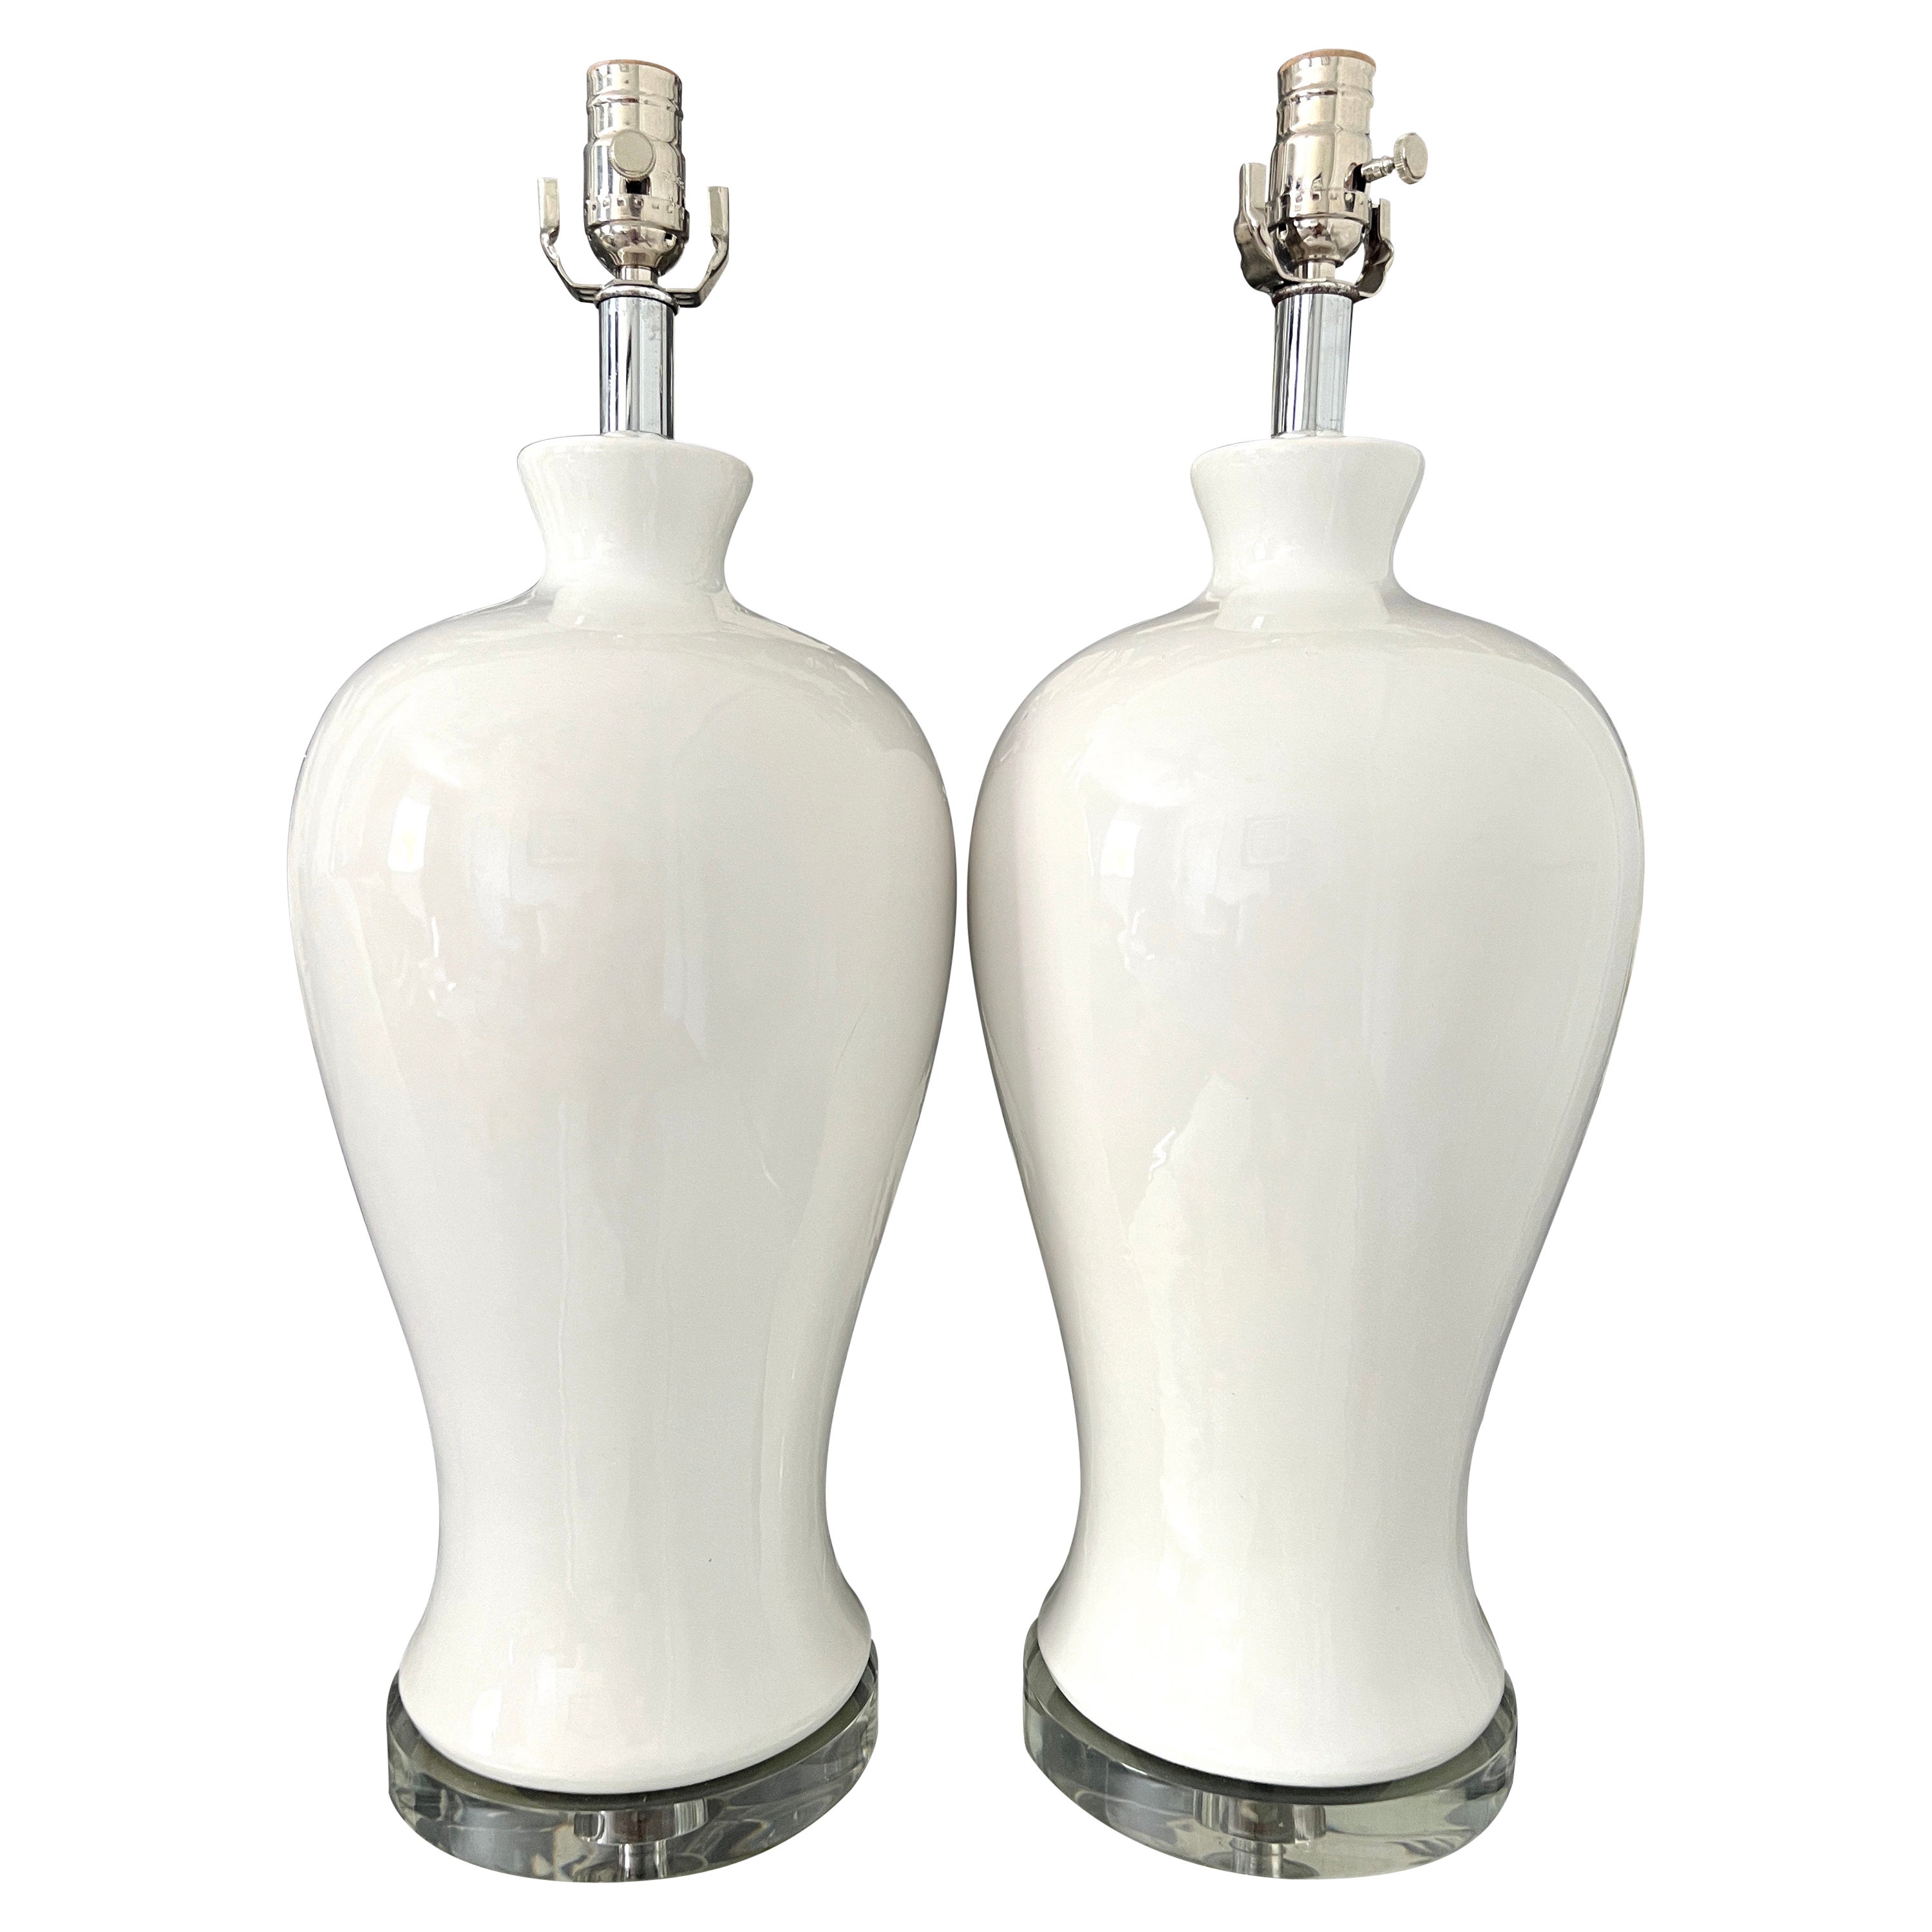 Modernistische Urnenlampen aus Keramik in weißer Glasur mit Lucite-Sockeln, ca. 1960er Jahre, Paar